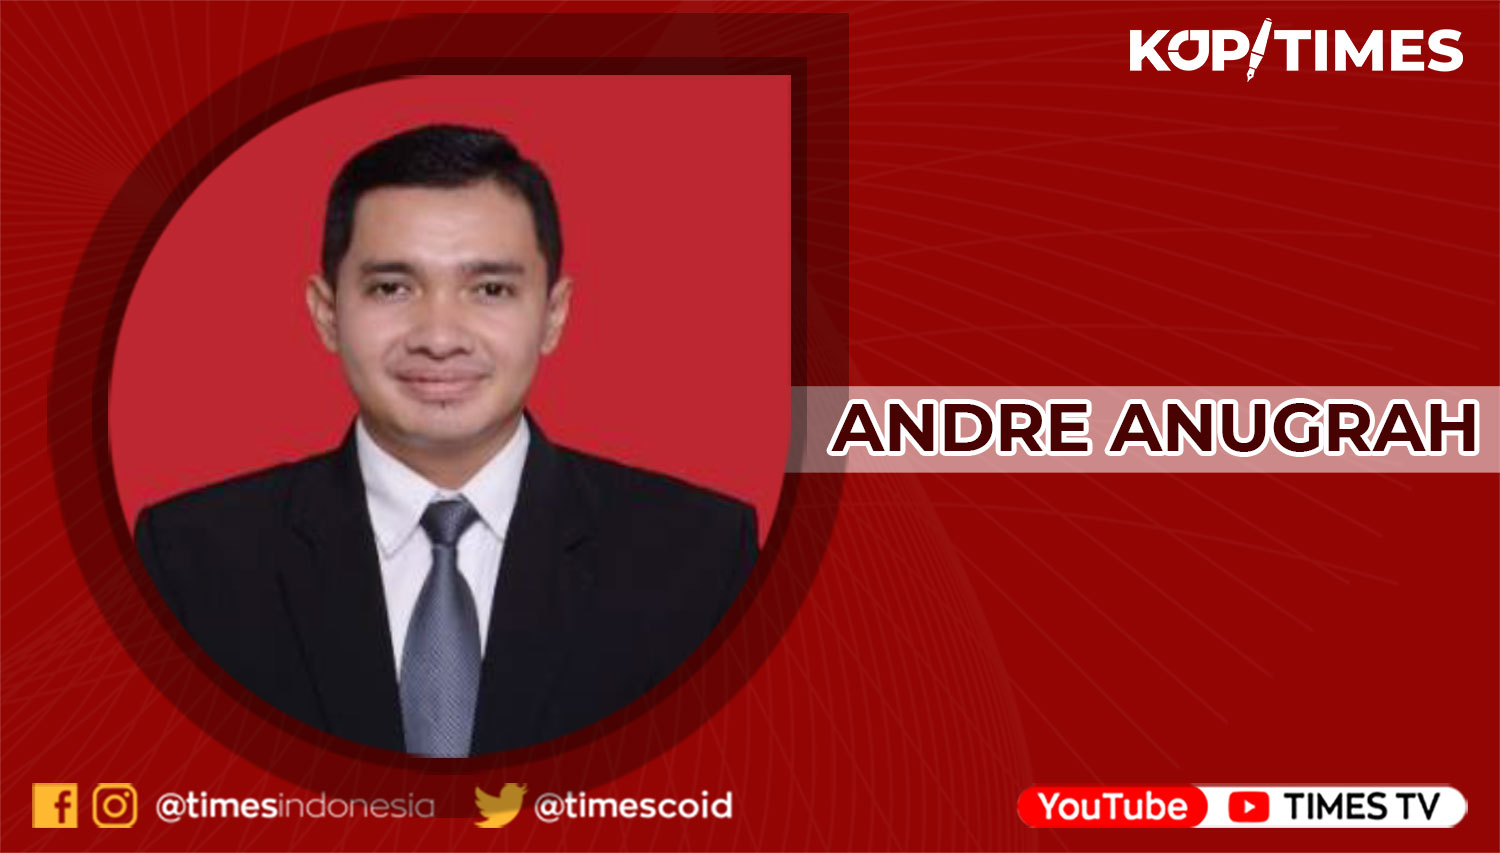 Andre Anugrah, S.Pd., M.Pd.; Mahasiswa Doktoral di bidang Linguistik Univesitas Pendidikan Indonesia; Dosen Linguistik dan Sastra di Universitas Bina Sarana Informatika.